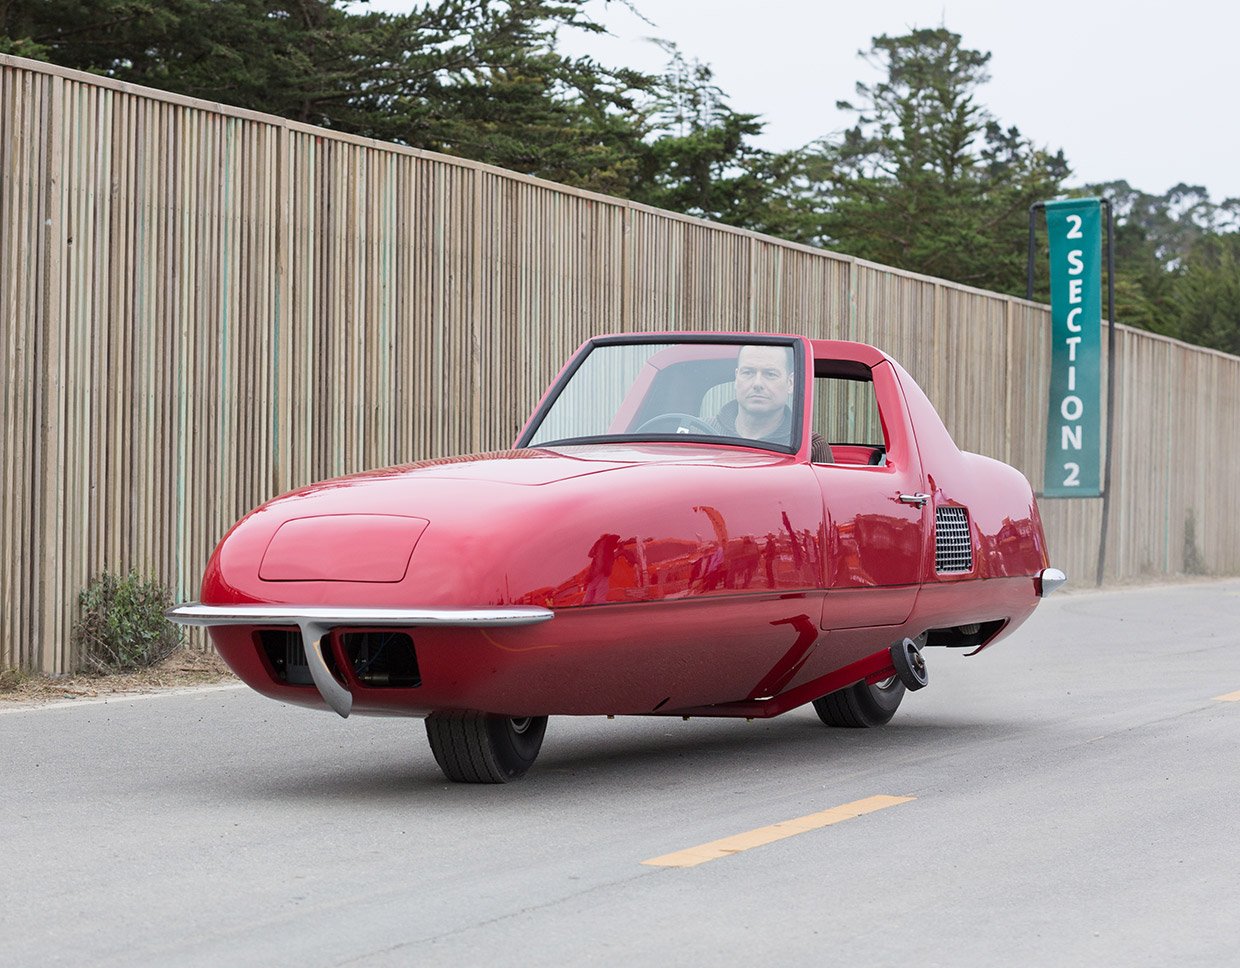 1967 Gyro-X 2-Wheel Car Restored, Wins Prestigious Award